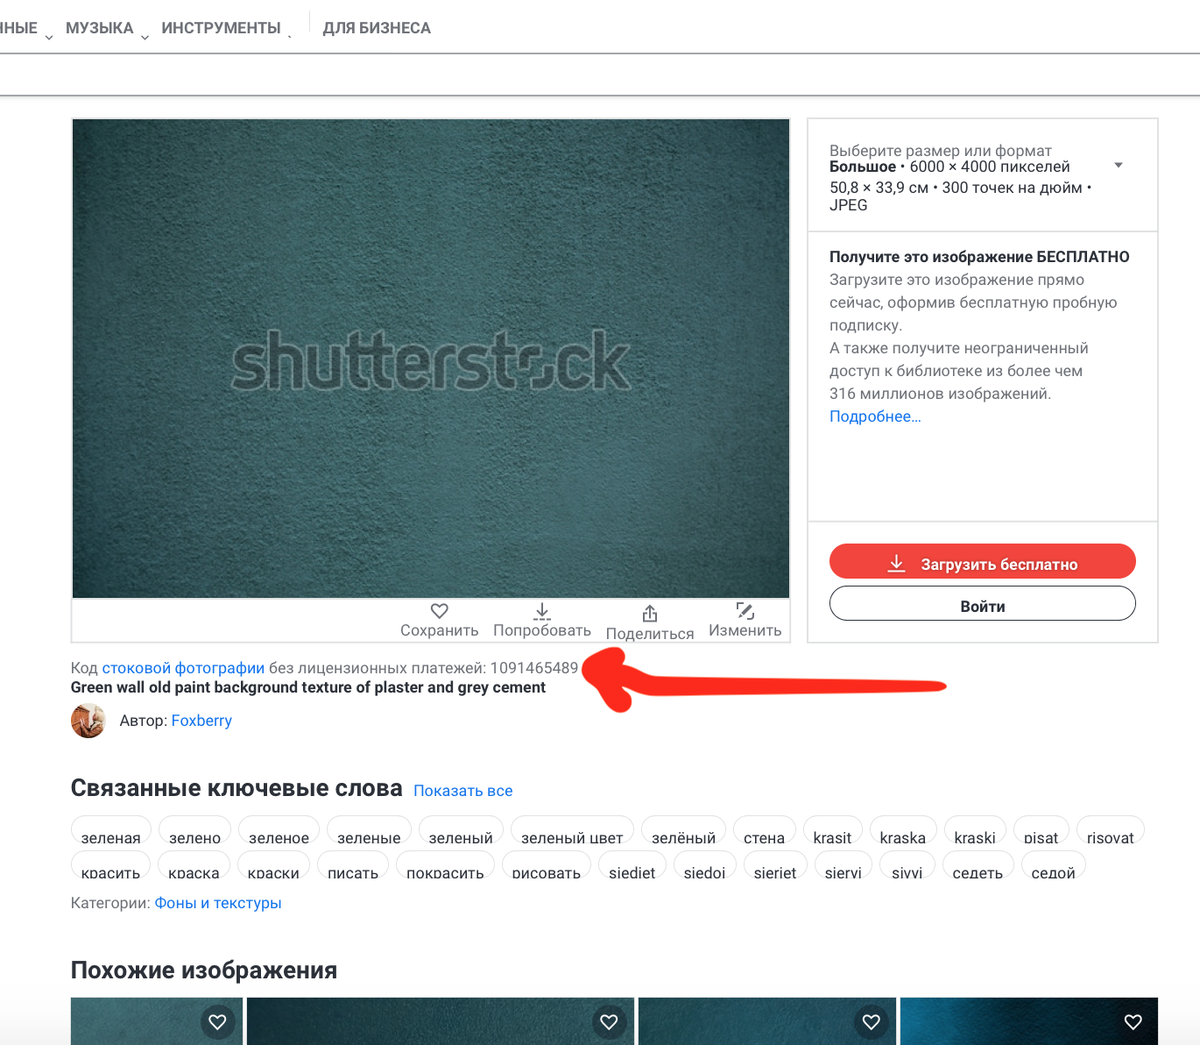 Рассказываю о двух способах, которые помогут Вам найти код фотографии или любого другого изображения на фотостоке ShutterStock. ✅ Вариант 1.